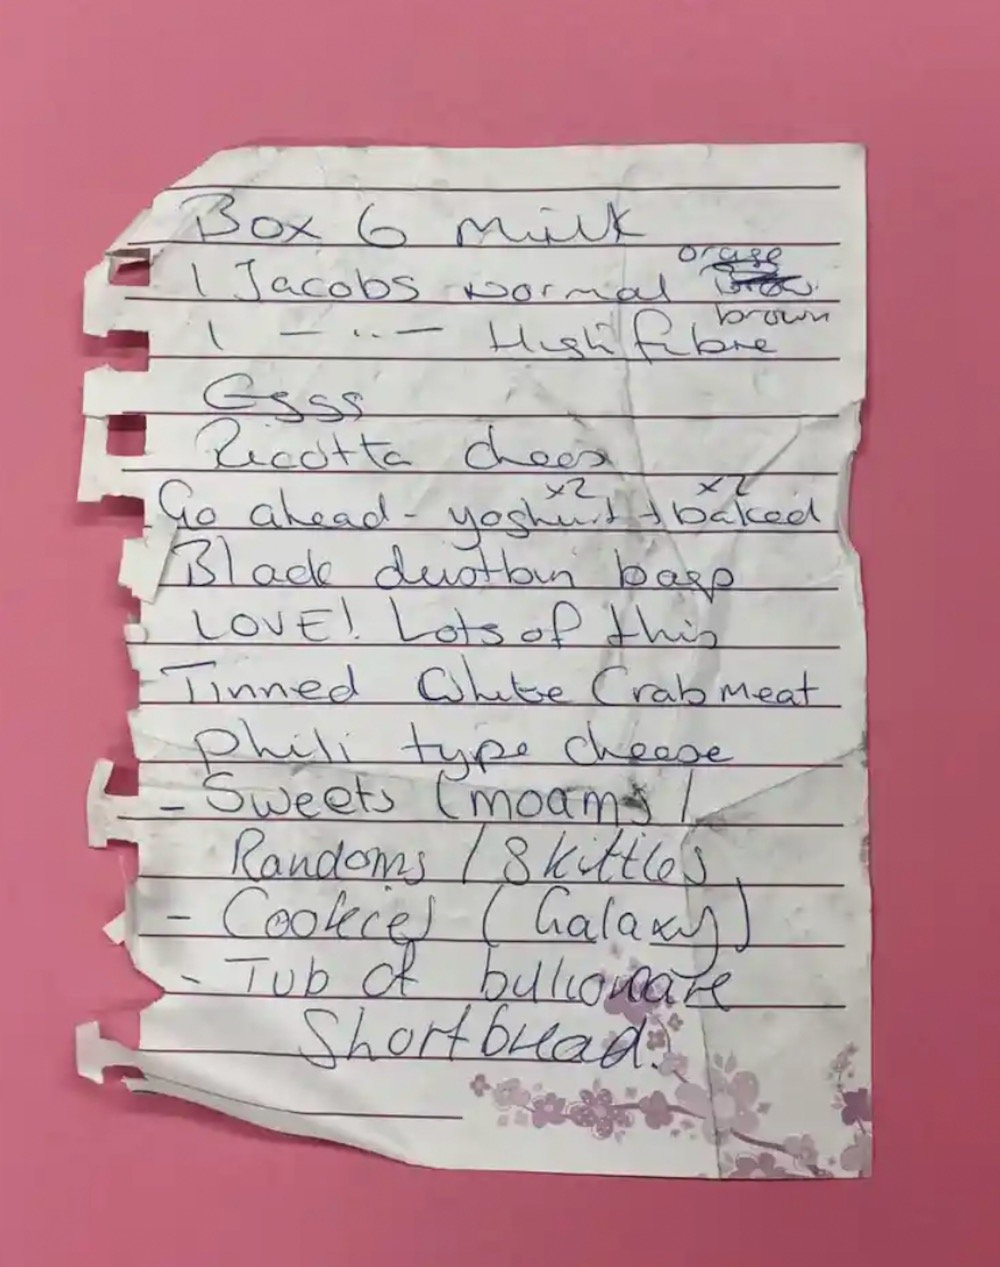 “爱！爱你很多次！……” 2019 年 10 月在 乐购门前找到的清单。